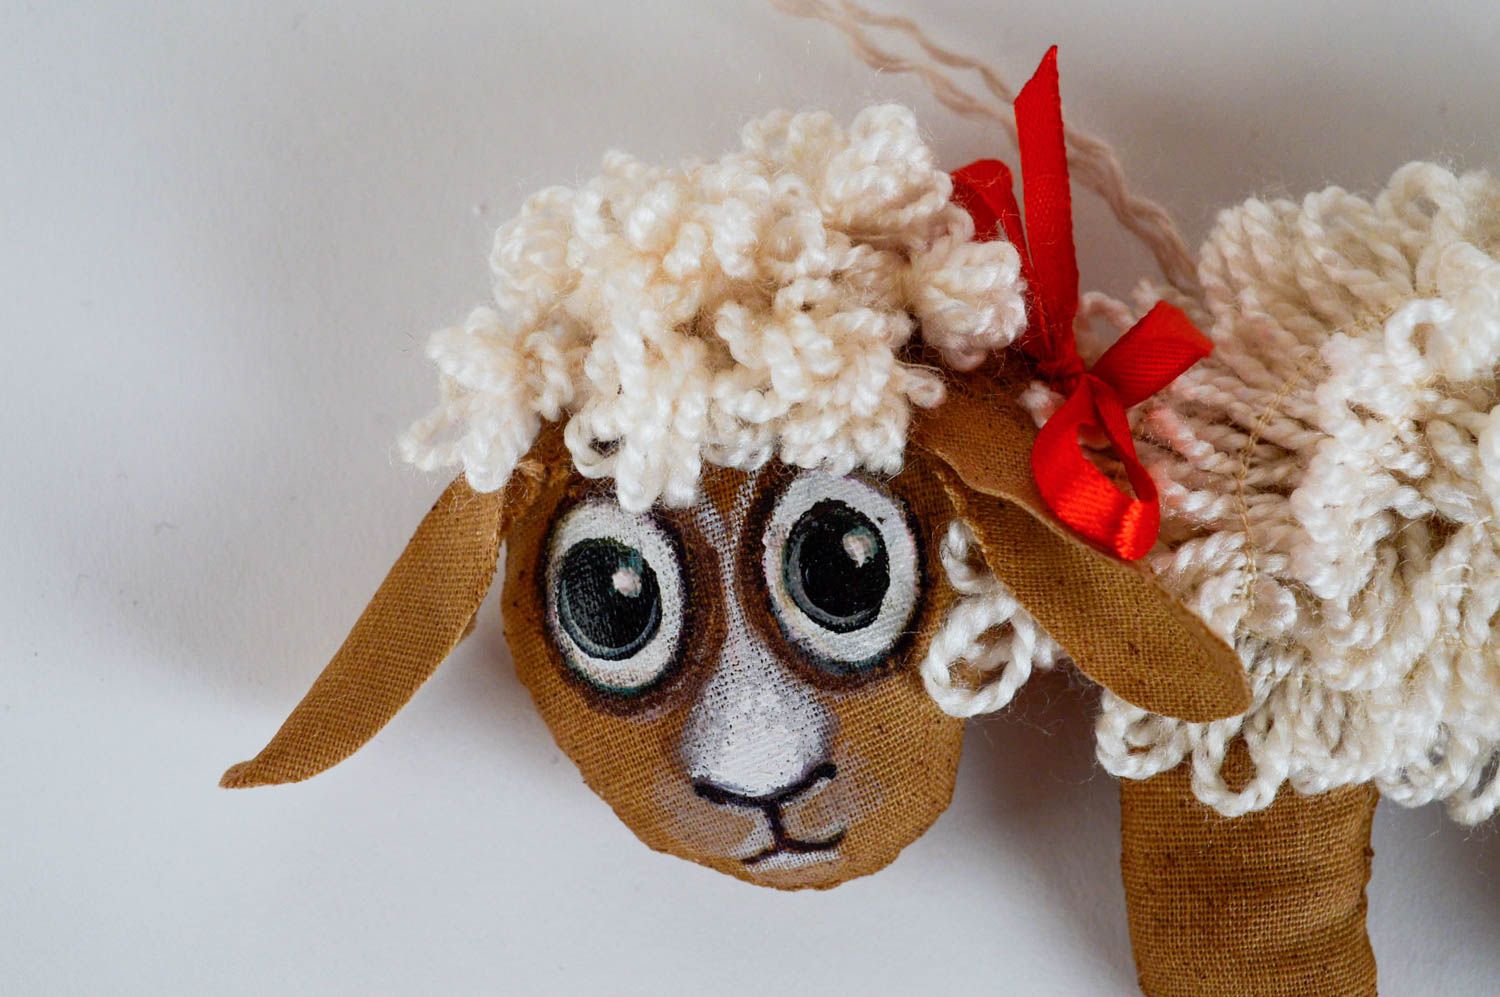 Мягкая игрушка овечка для интерьера дома ароматизированная расписная хенд мейд фото 2